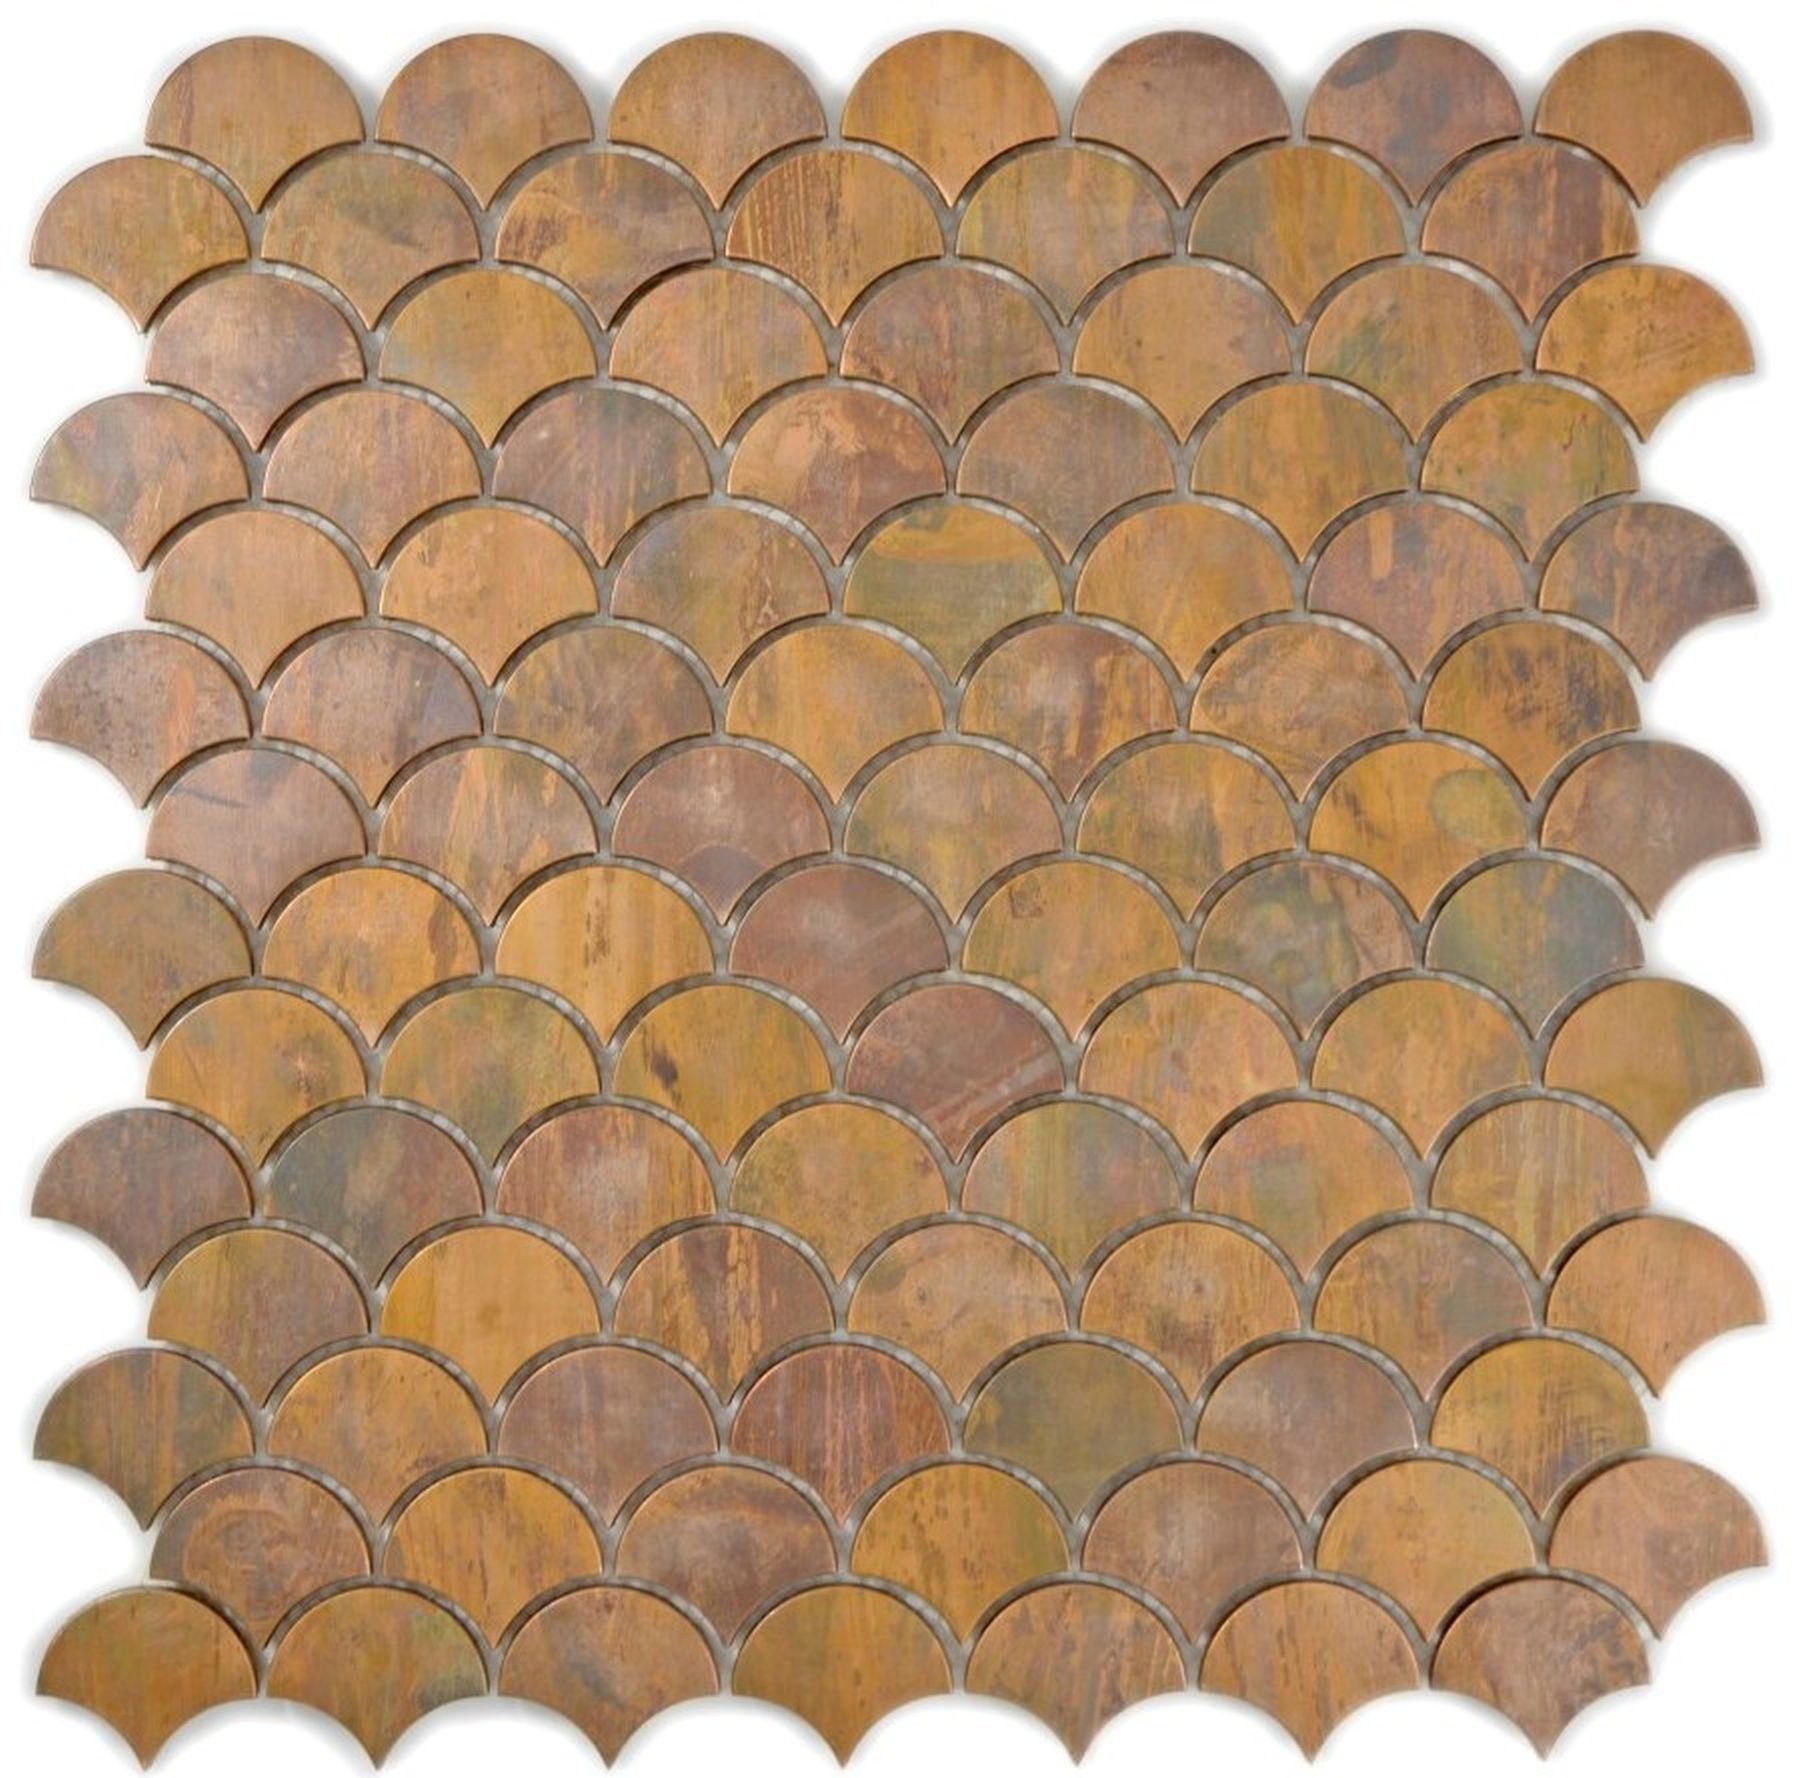 Mosani Mosaikfliesen Kupfermosaik Fliese Fächer braun Küchenrückwand Fliesenspiegel